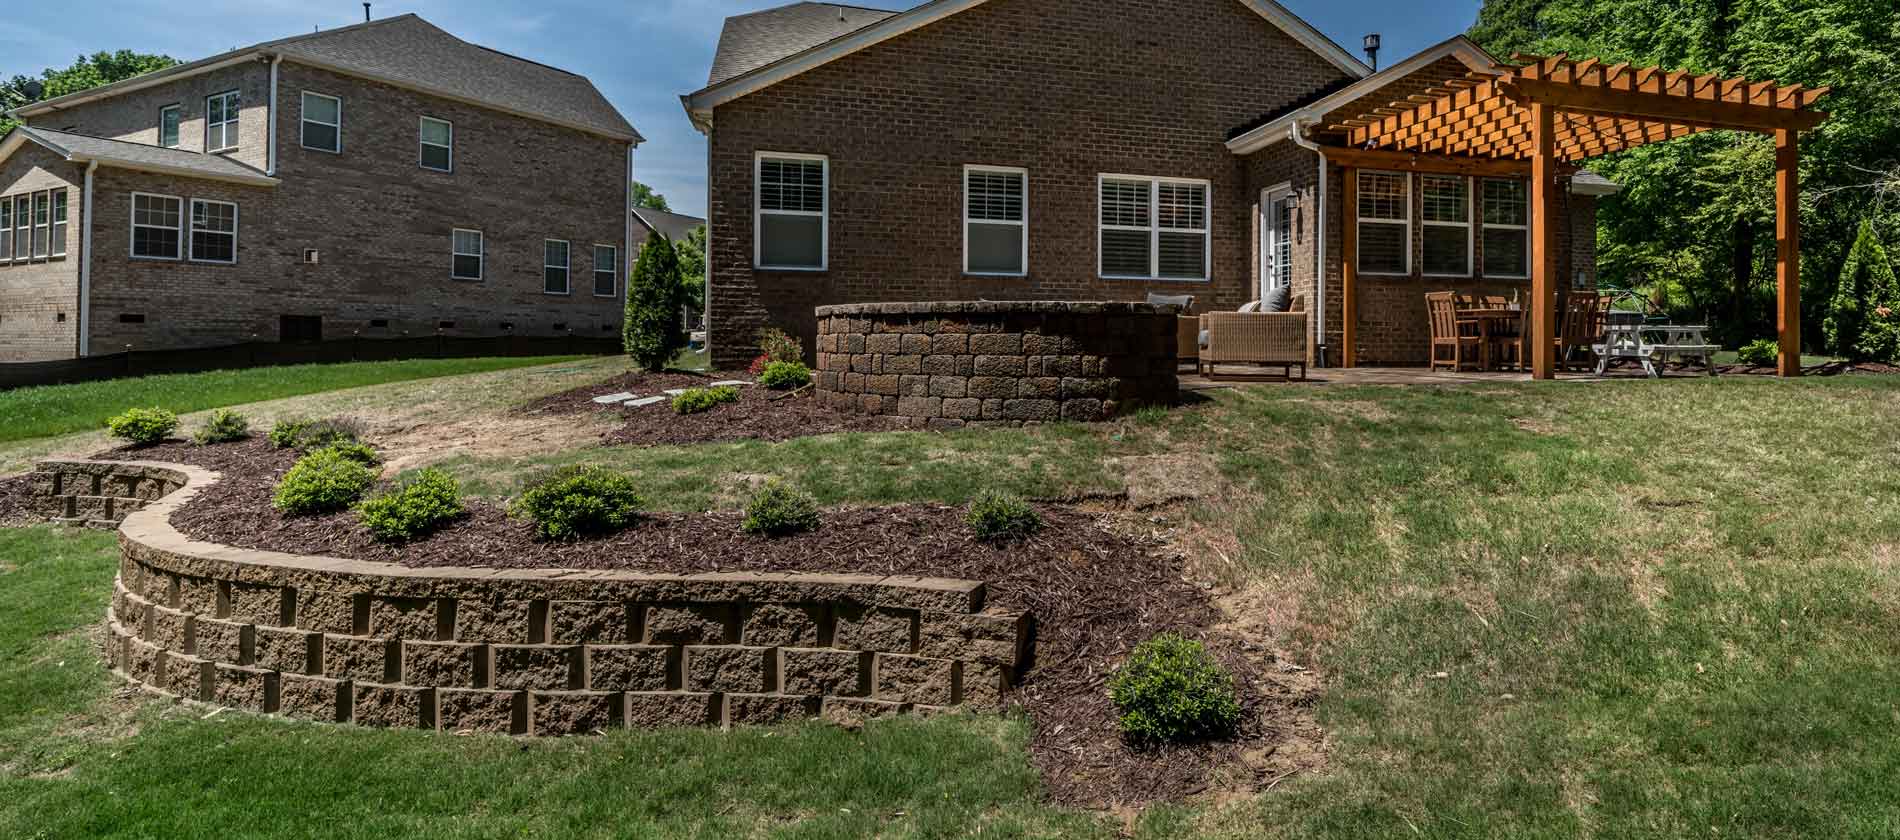 Sloped Yard Ideas For Landscaping Your, Sloped Backyard Landscape Design